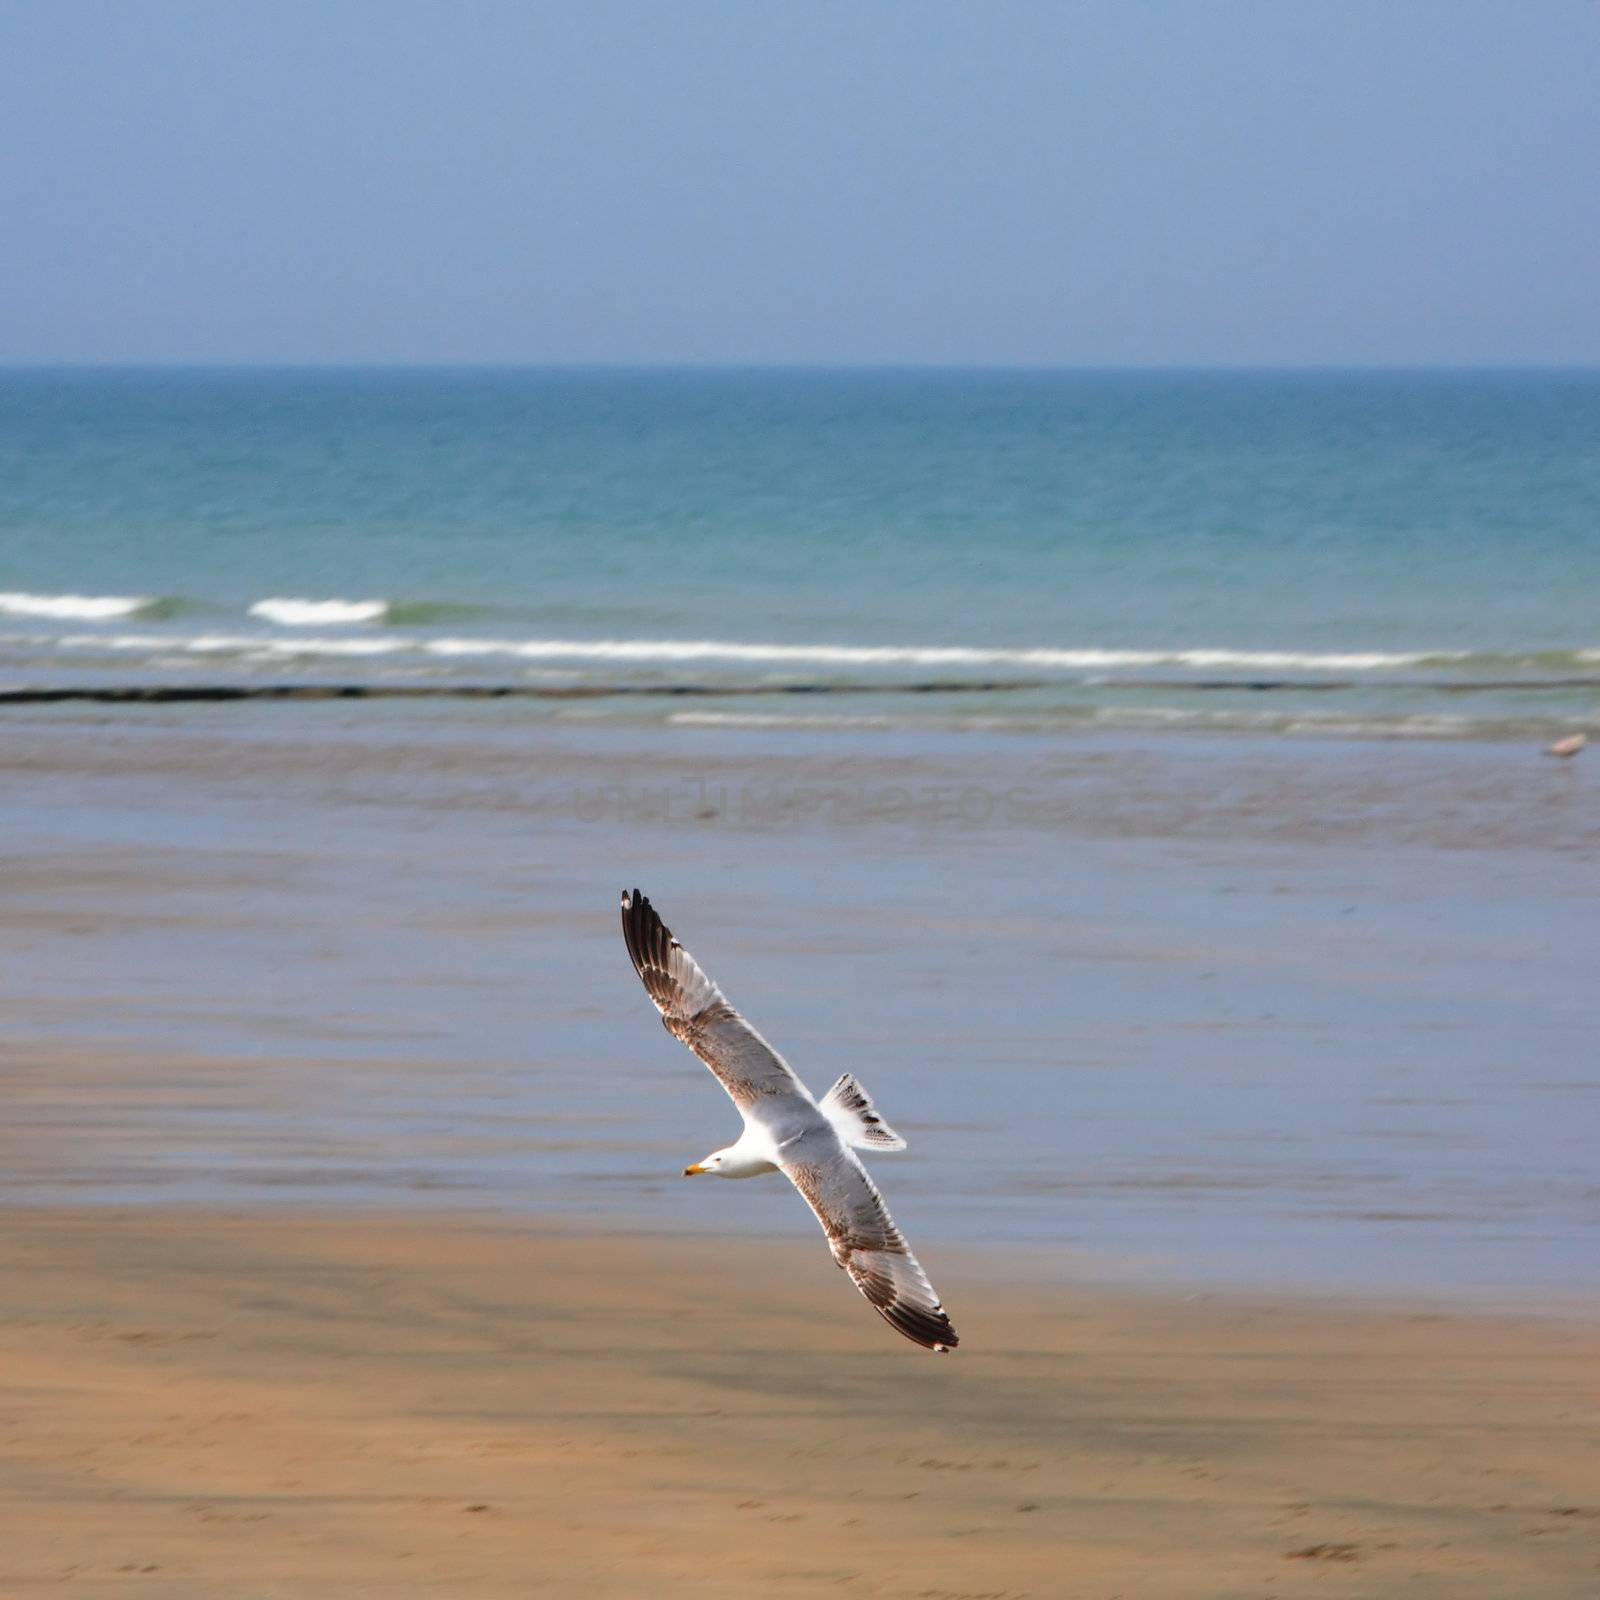 The white seagull flies over a beach
